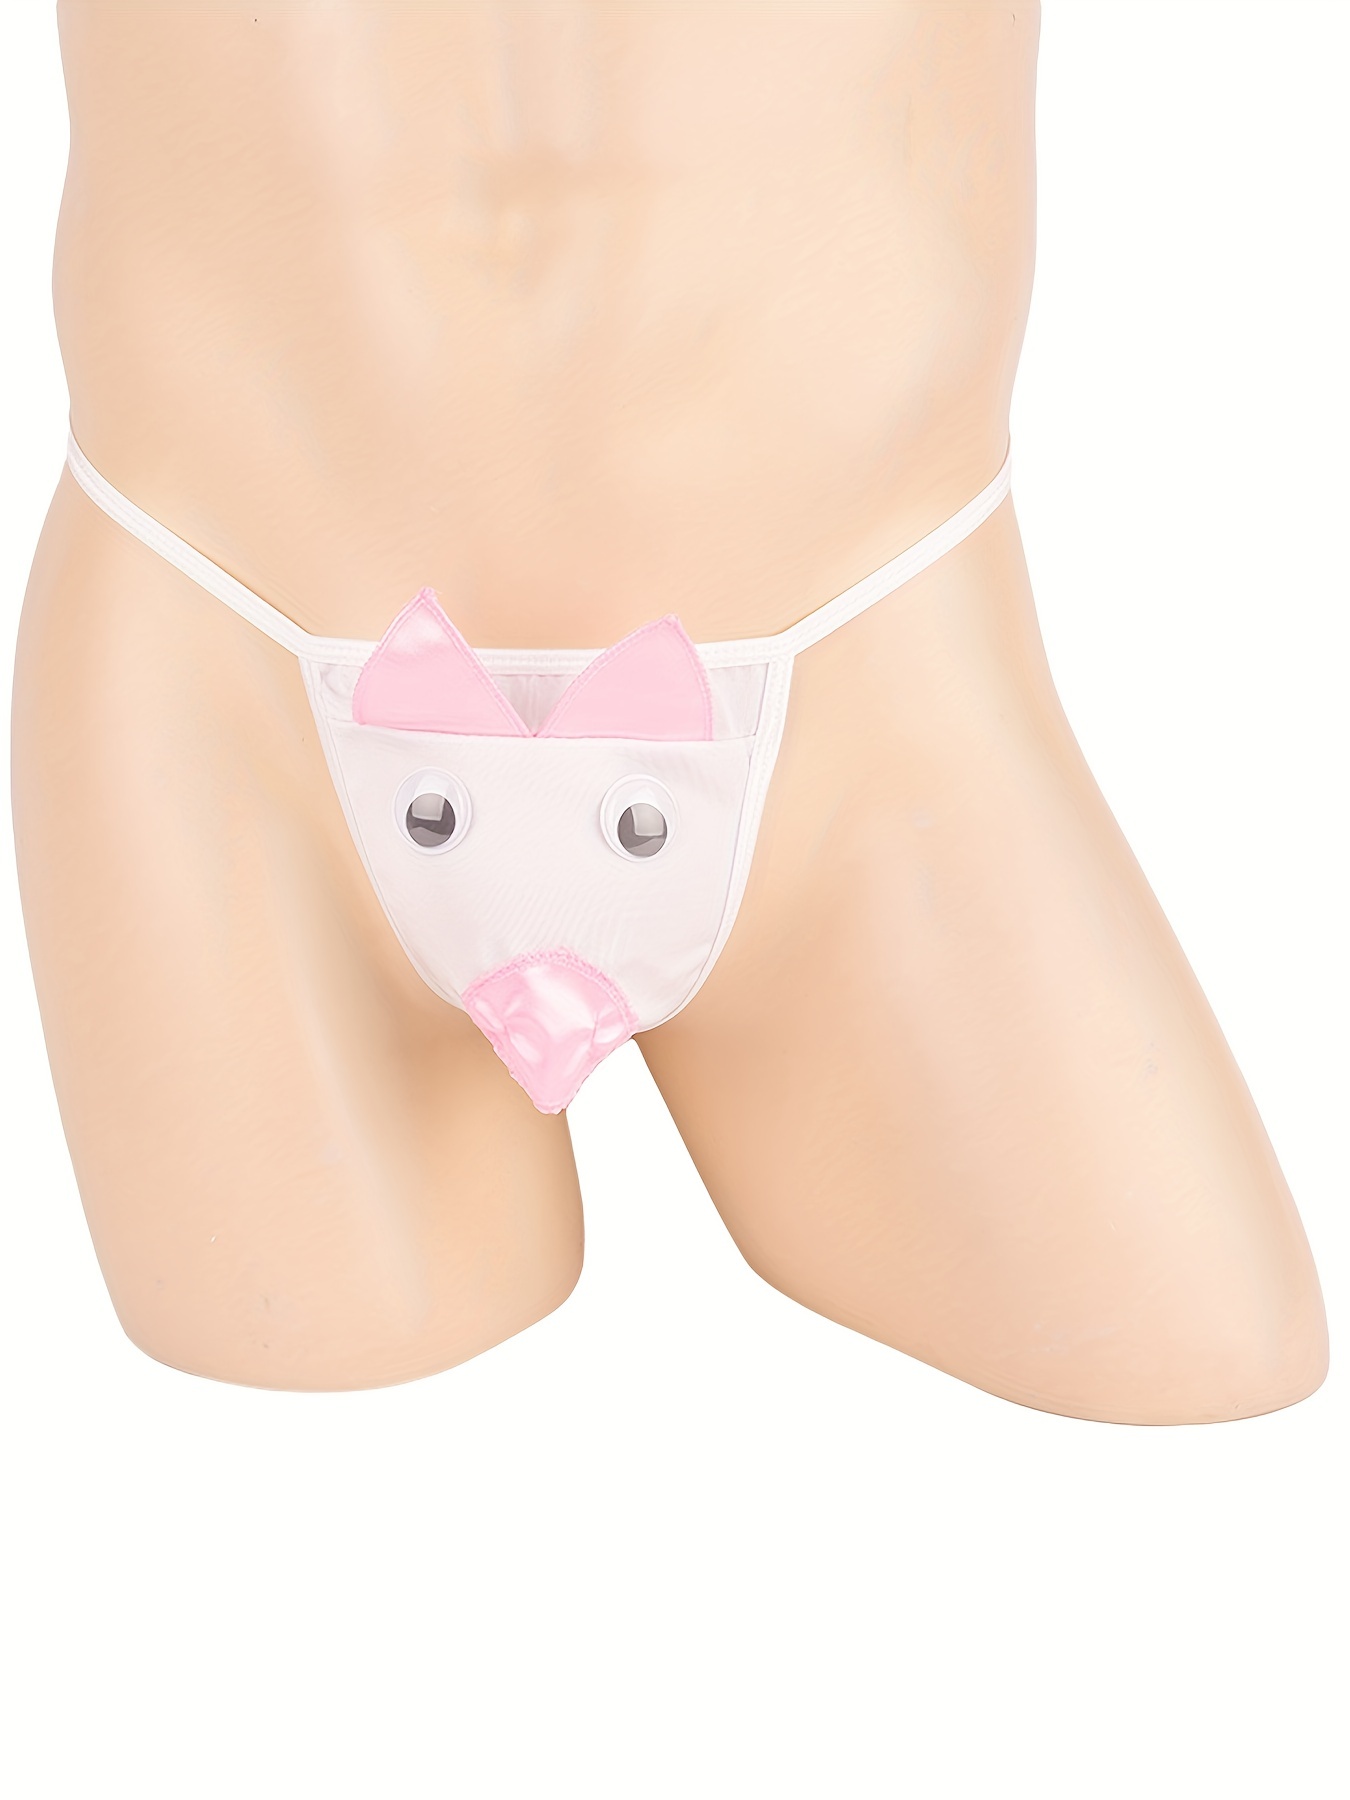 Pigs Animal Meme Underpants Homme Panties Men's Underwear Sexy